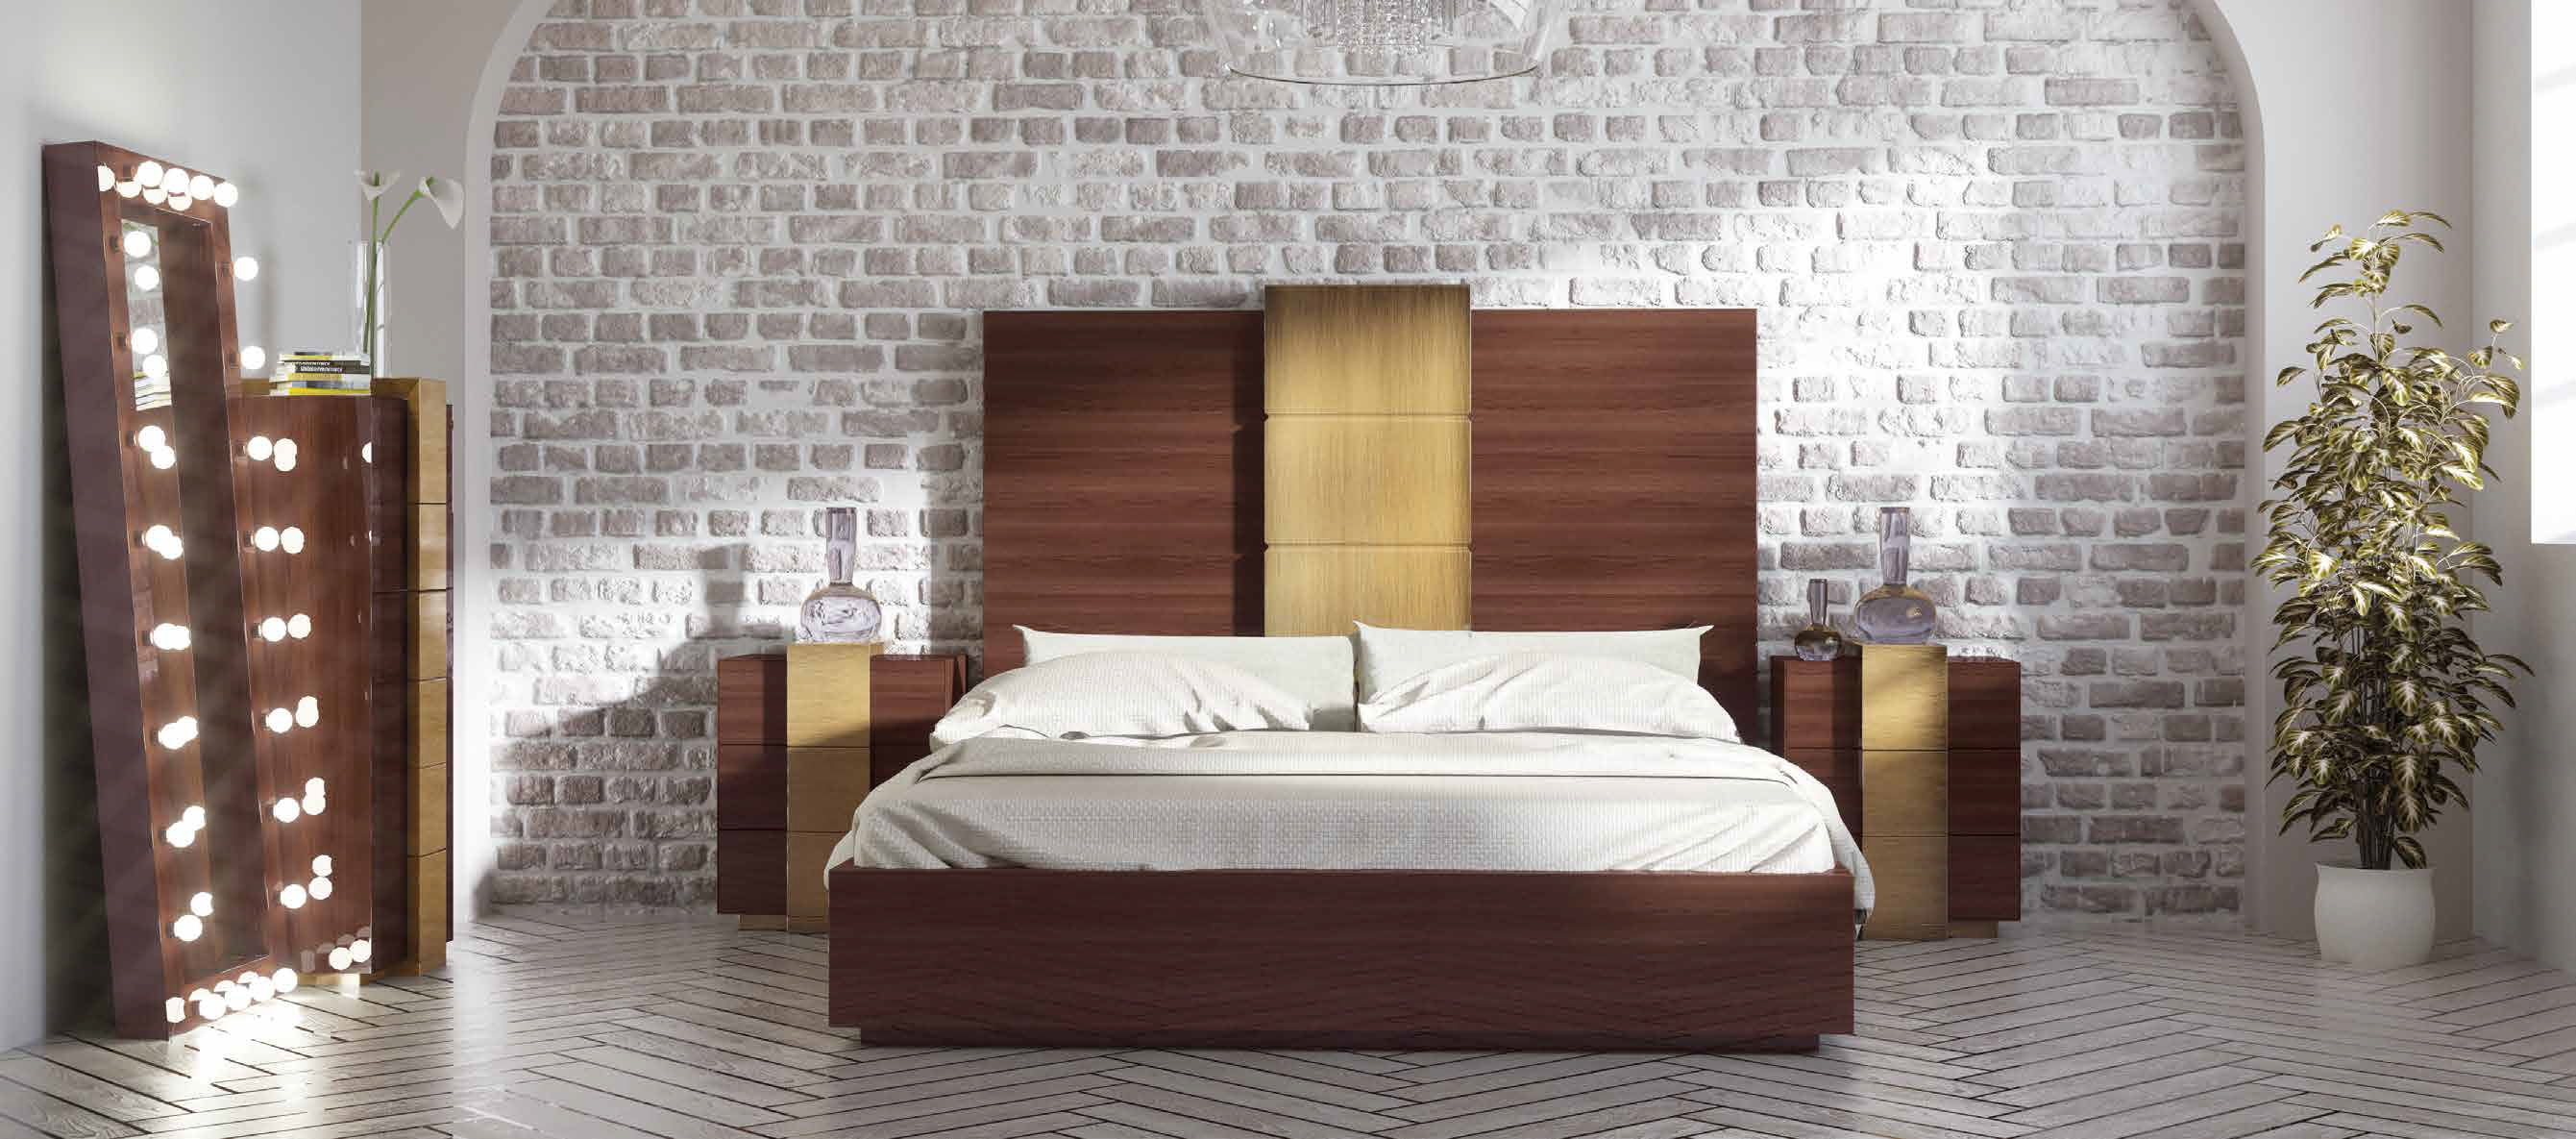 Brands Franco ENZO Bedrooms, Spain DOR 13